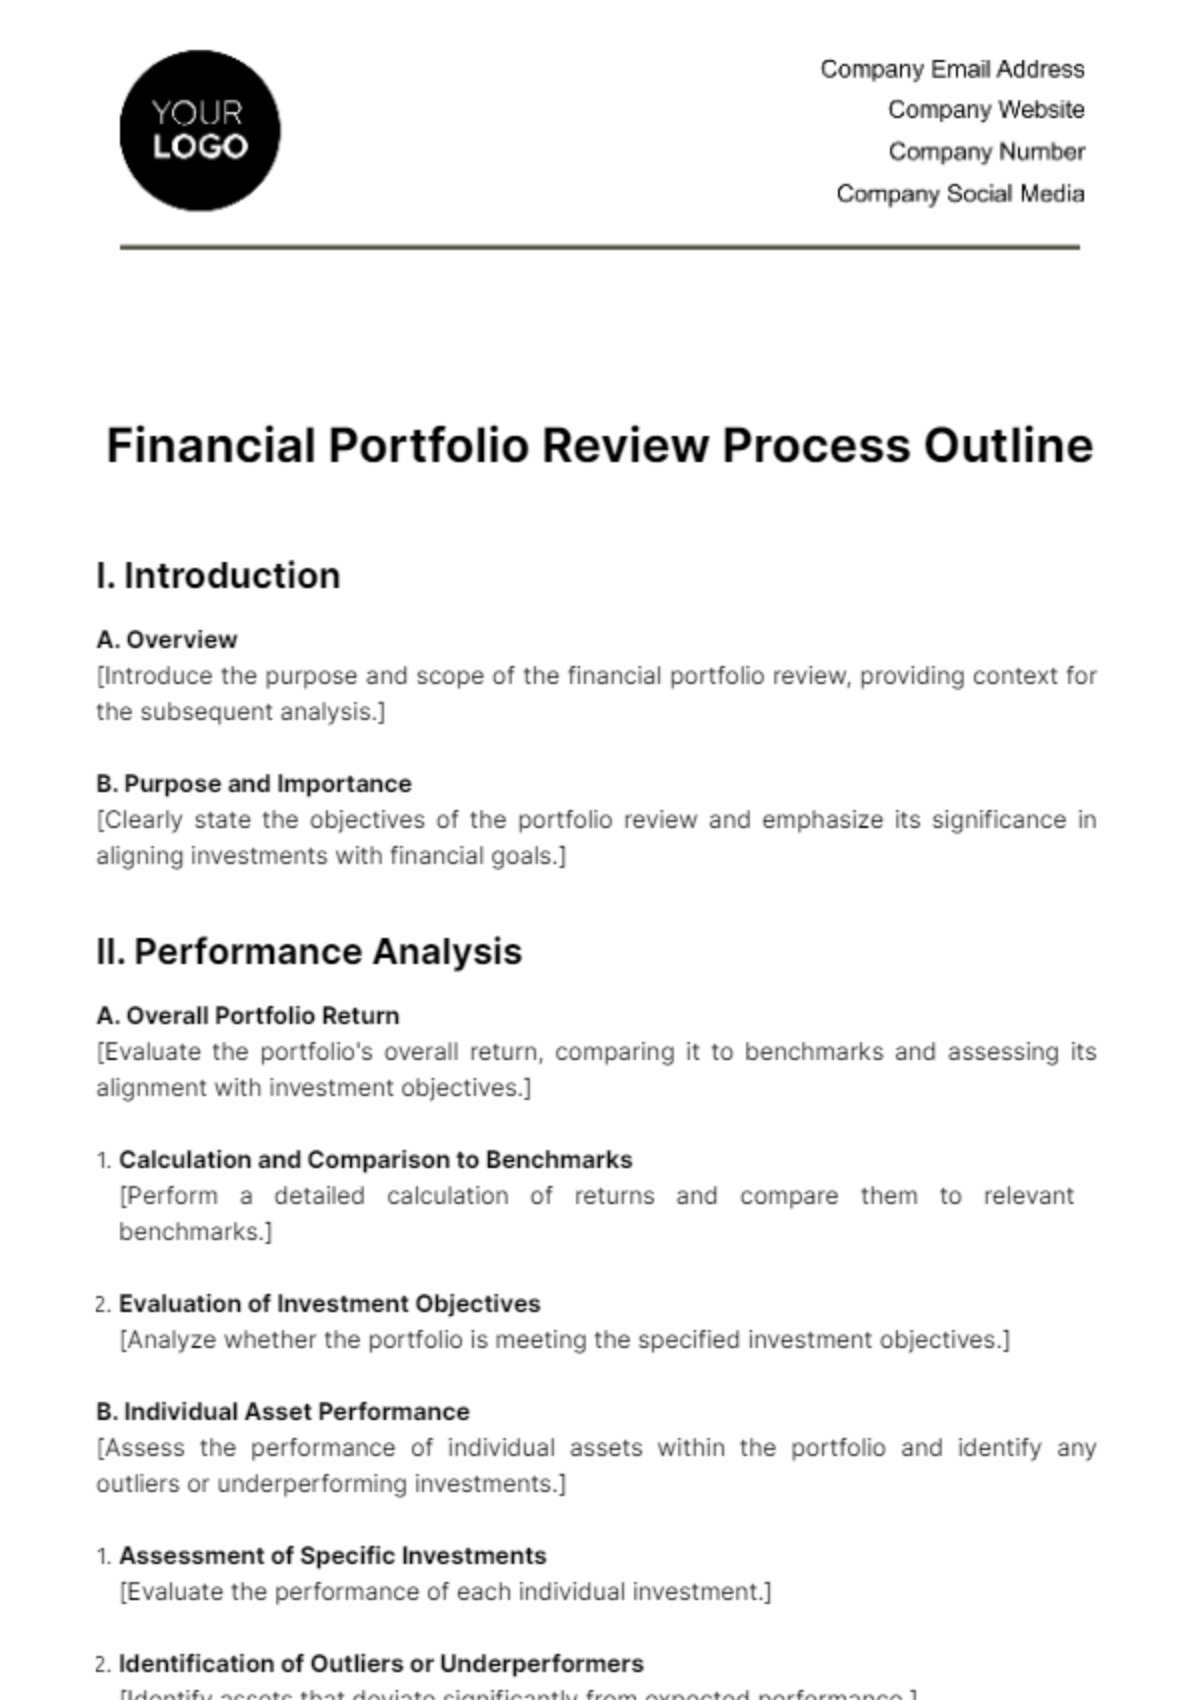 Financial Portfolio Review Process Outline Template